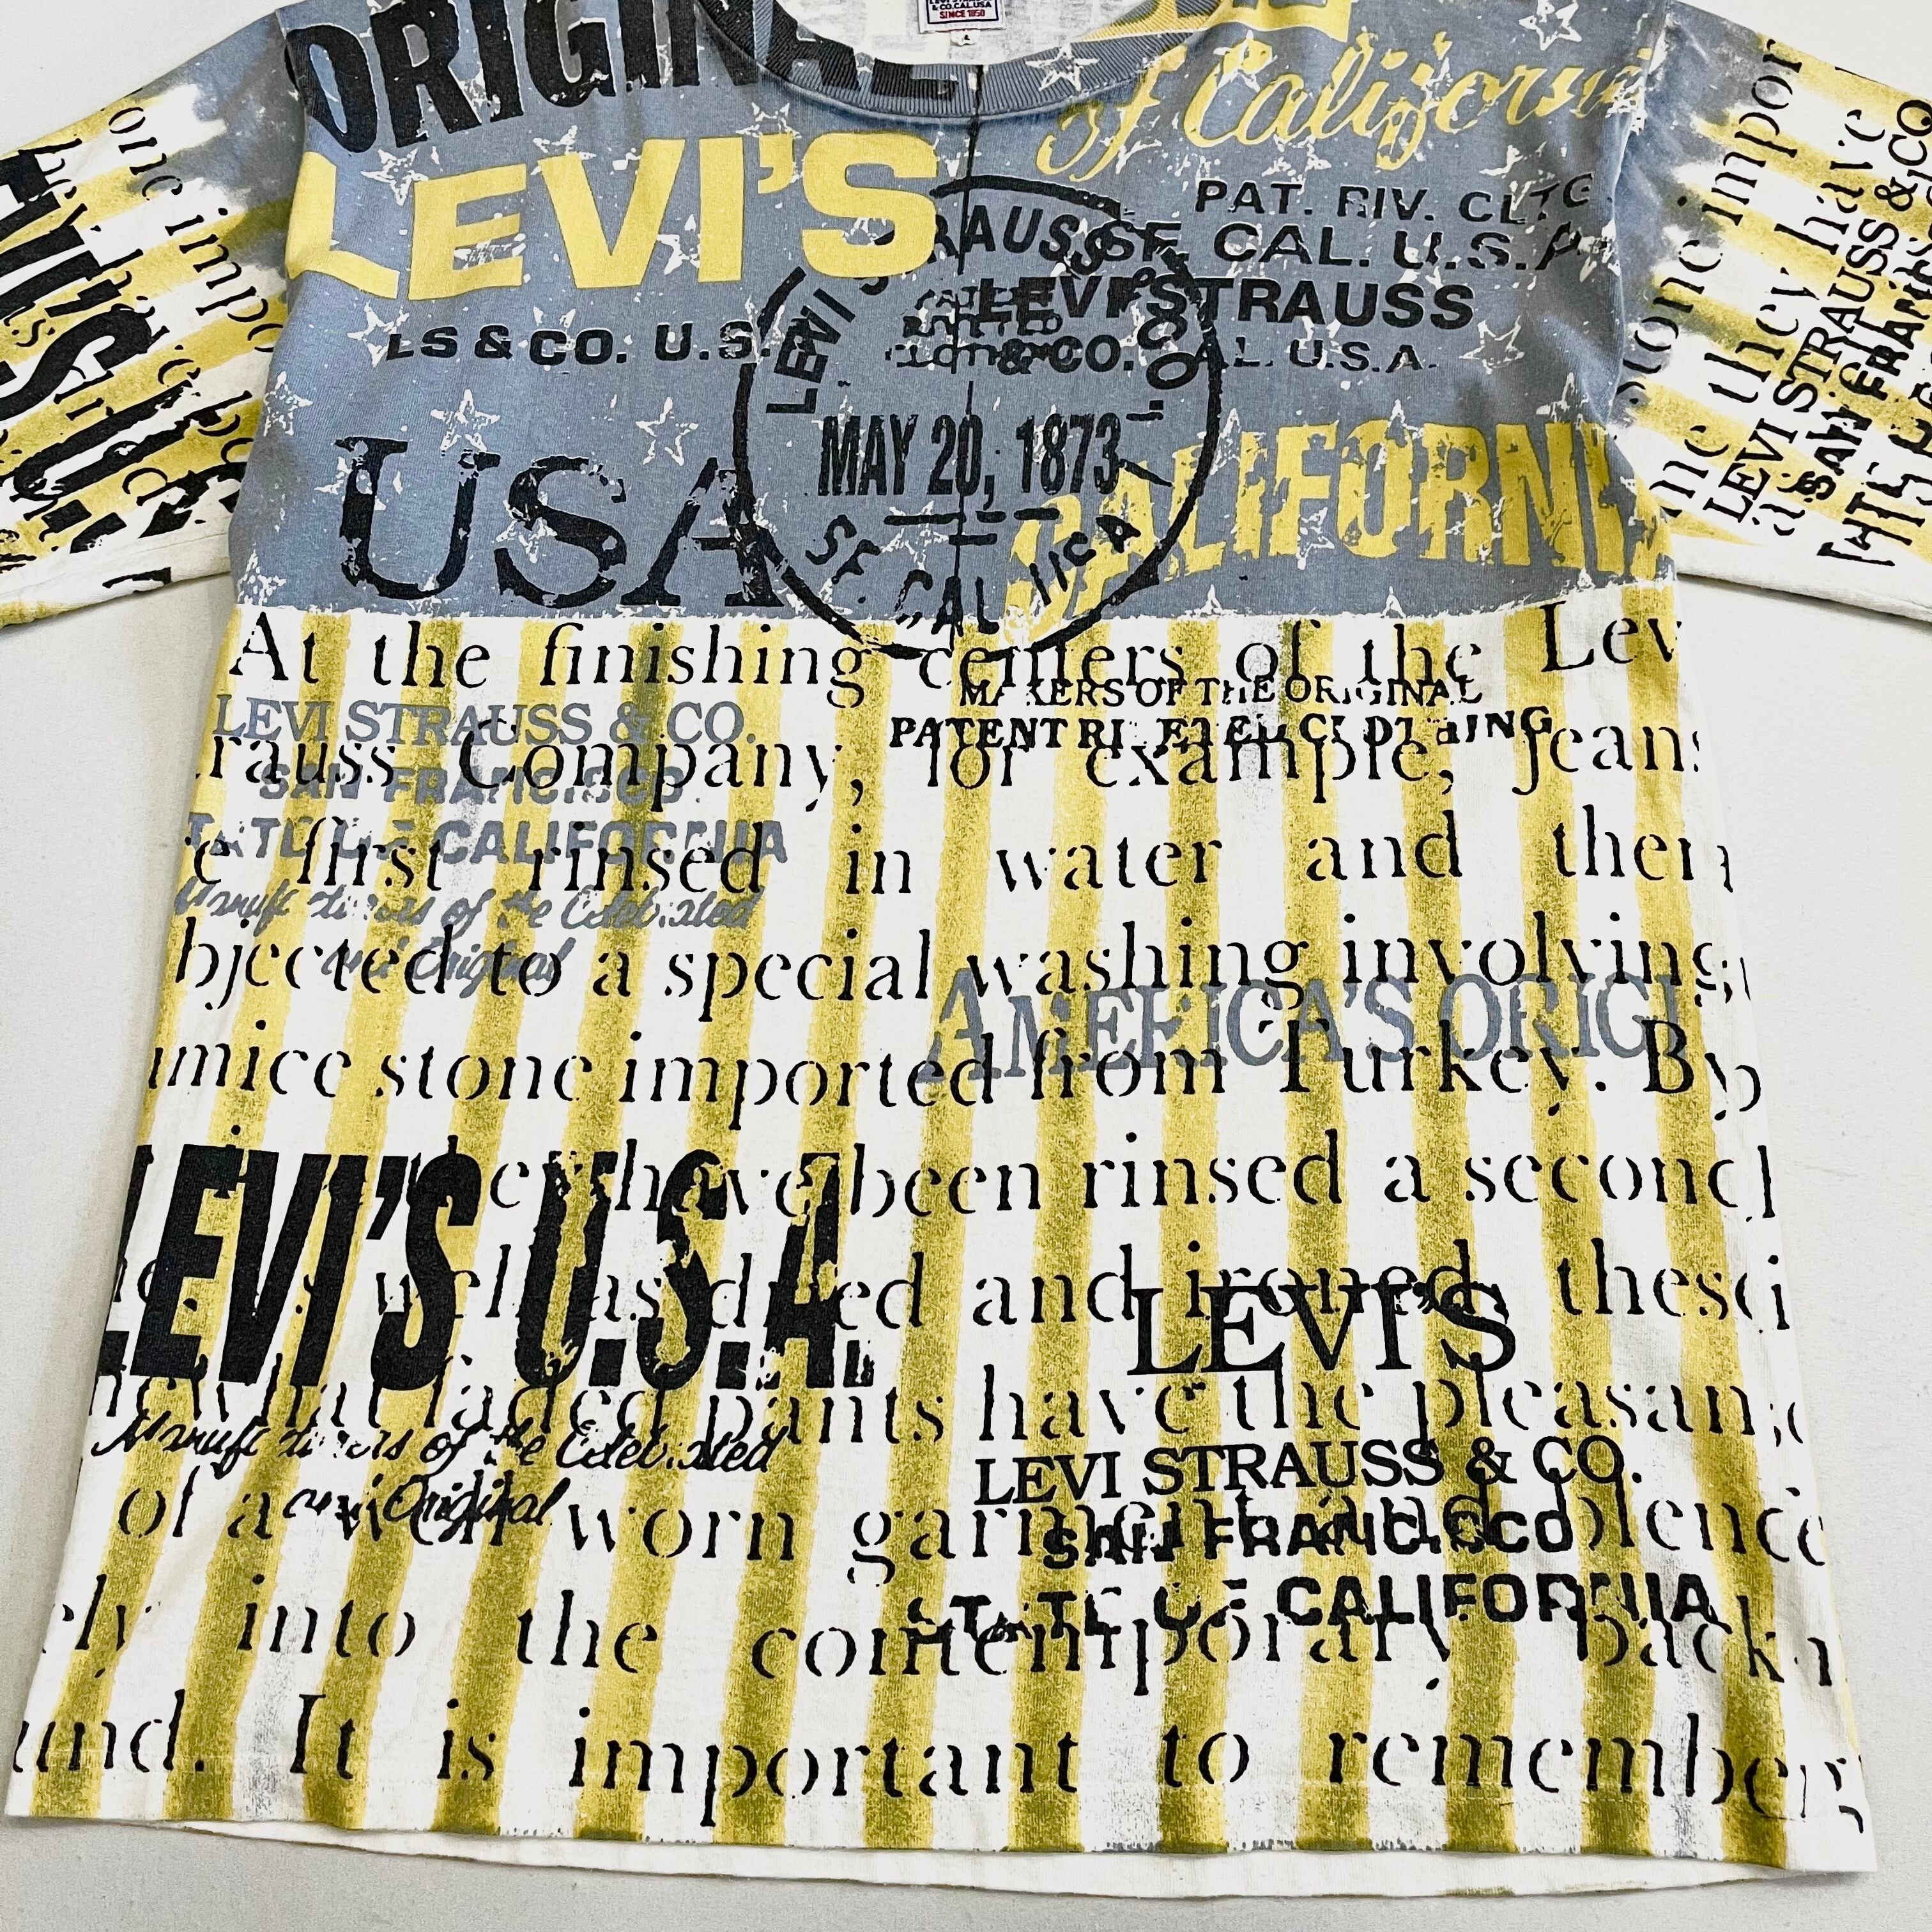 【ヴィンテージ】90s levi's デザインTシャツ